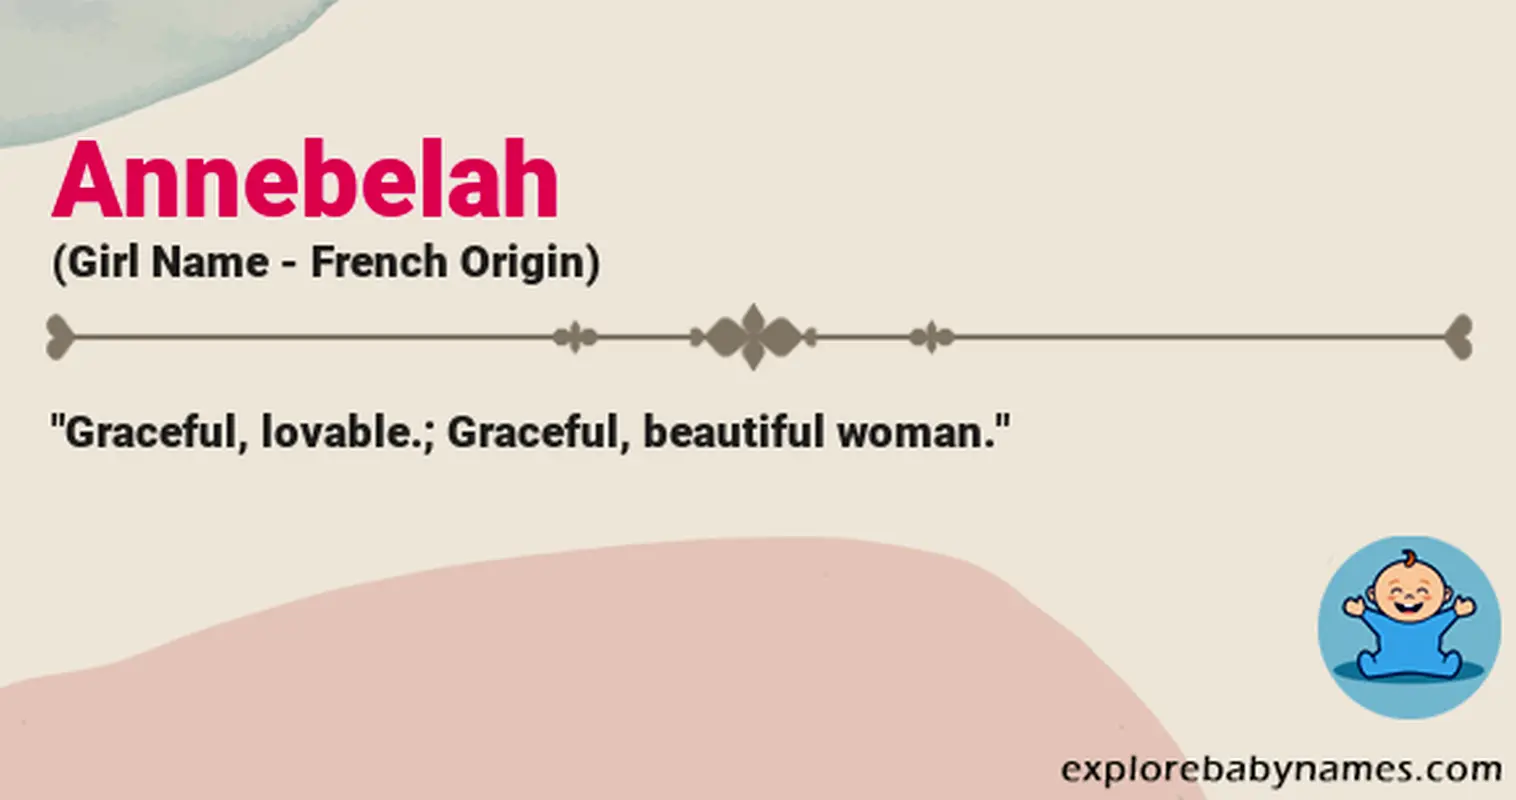 Meaning of Annebelah